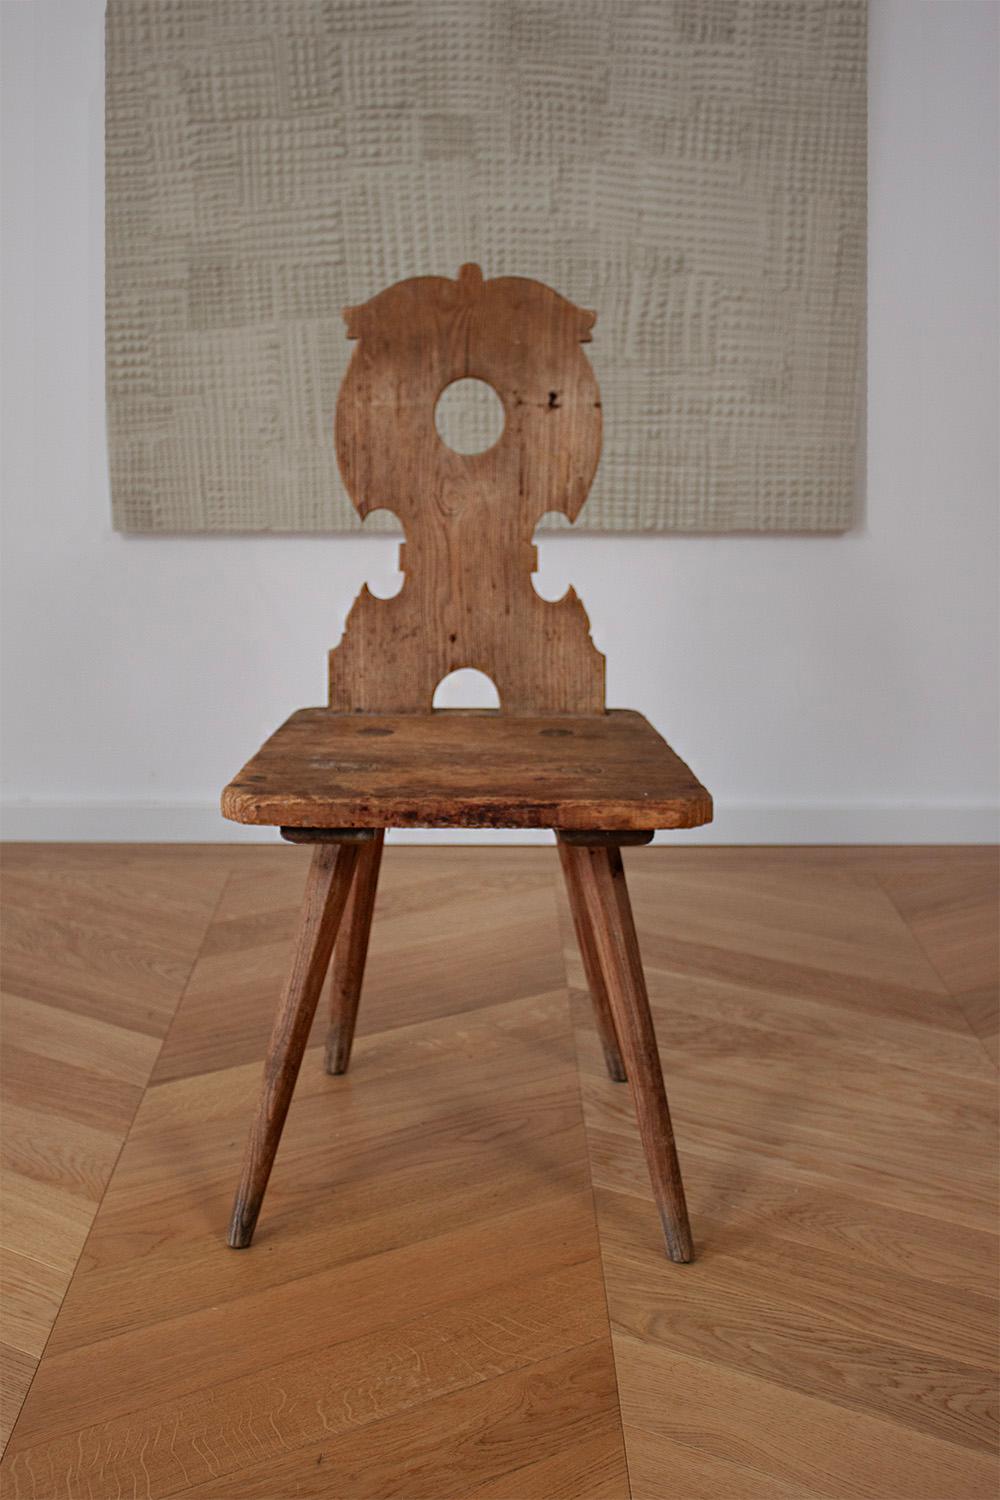 Cette belle et ancienne Stabelle allemande est une chaise de paysan typique du début du siècle. 
La chaise est fabriquée de manière primitive, sans colle ni clous. La construction est basée sur un système d'emboîtement. 
La tradition derrière ces